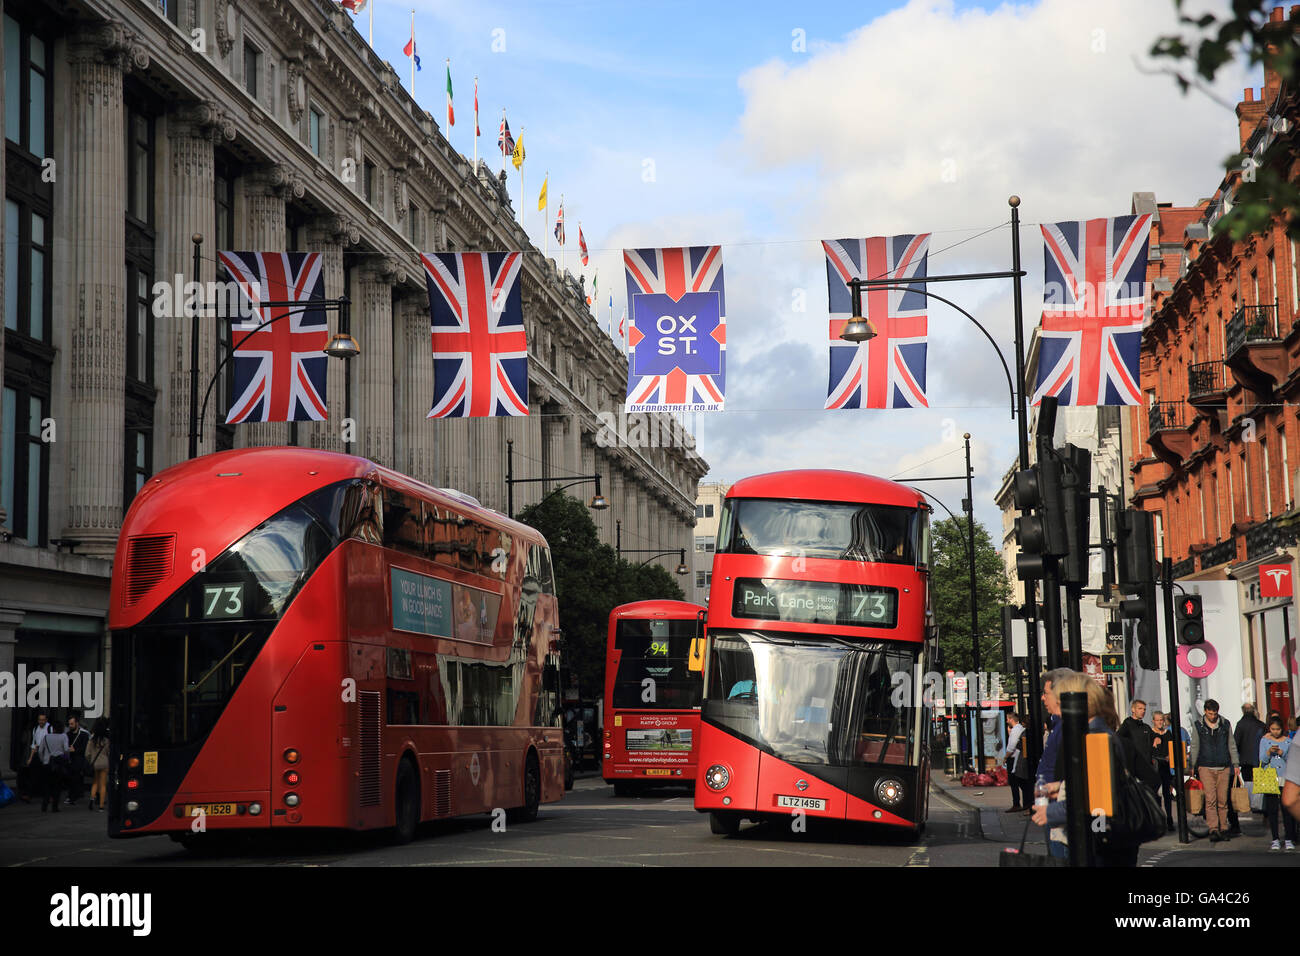 Union Jack Flag e rosso linea autobus Oxford Street, accanto a dal grande magazzino Selfridges, nel centro di Londra, Inghilterra, Regno Unito Foto Stock